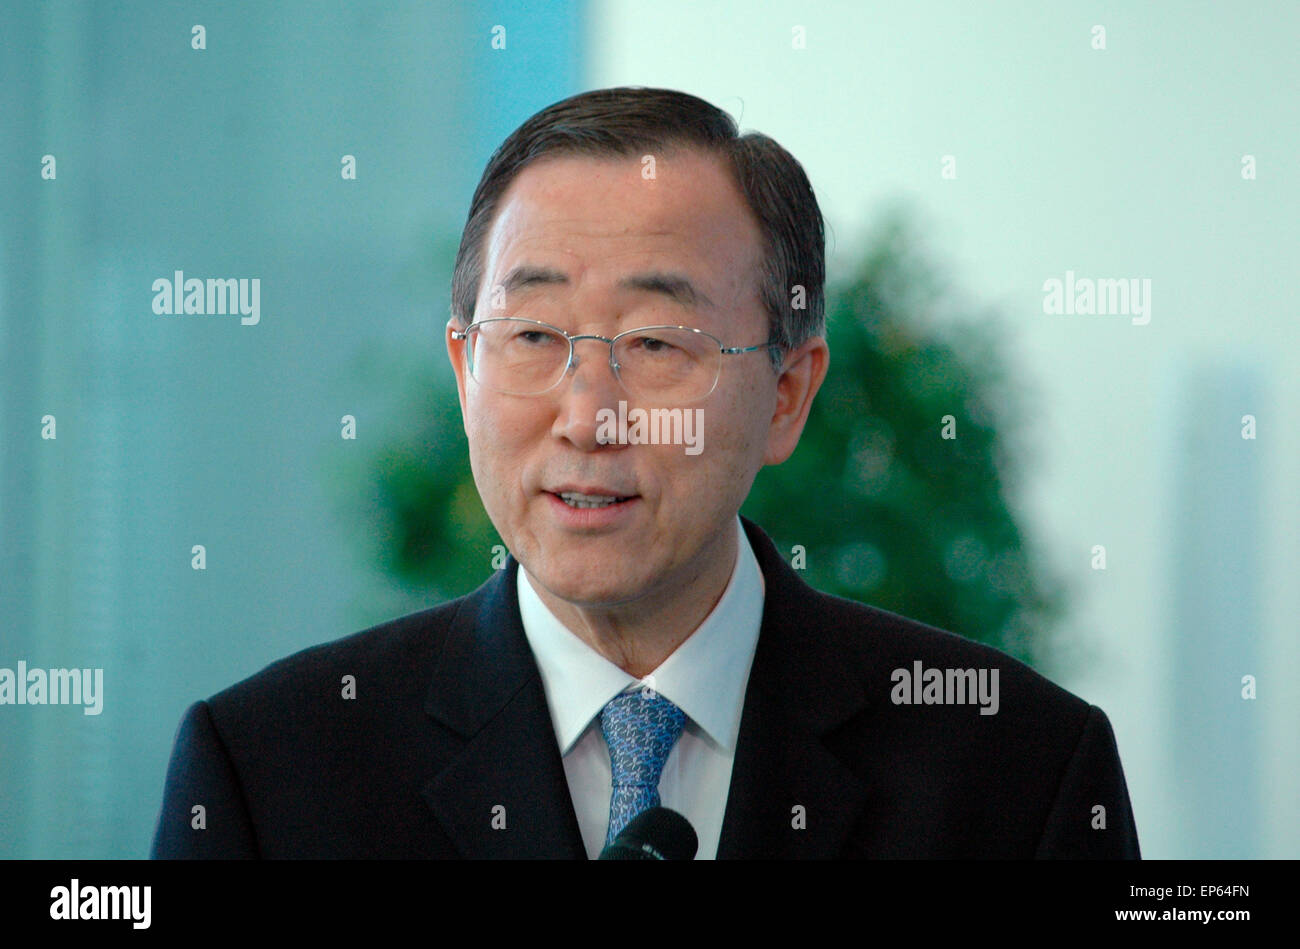 Ban Ki-Moon - Treffen der dt. Mit dem designierten Bundeskanzlerin Generalsekretaer der Vereinten Nationen, 7. Dezember 2006, Bundeskanzleramt, Berlín Tiergarten. Foto de stock